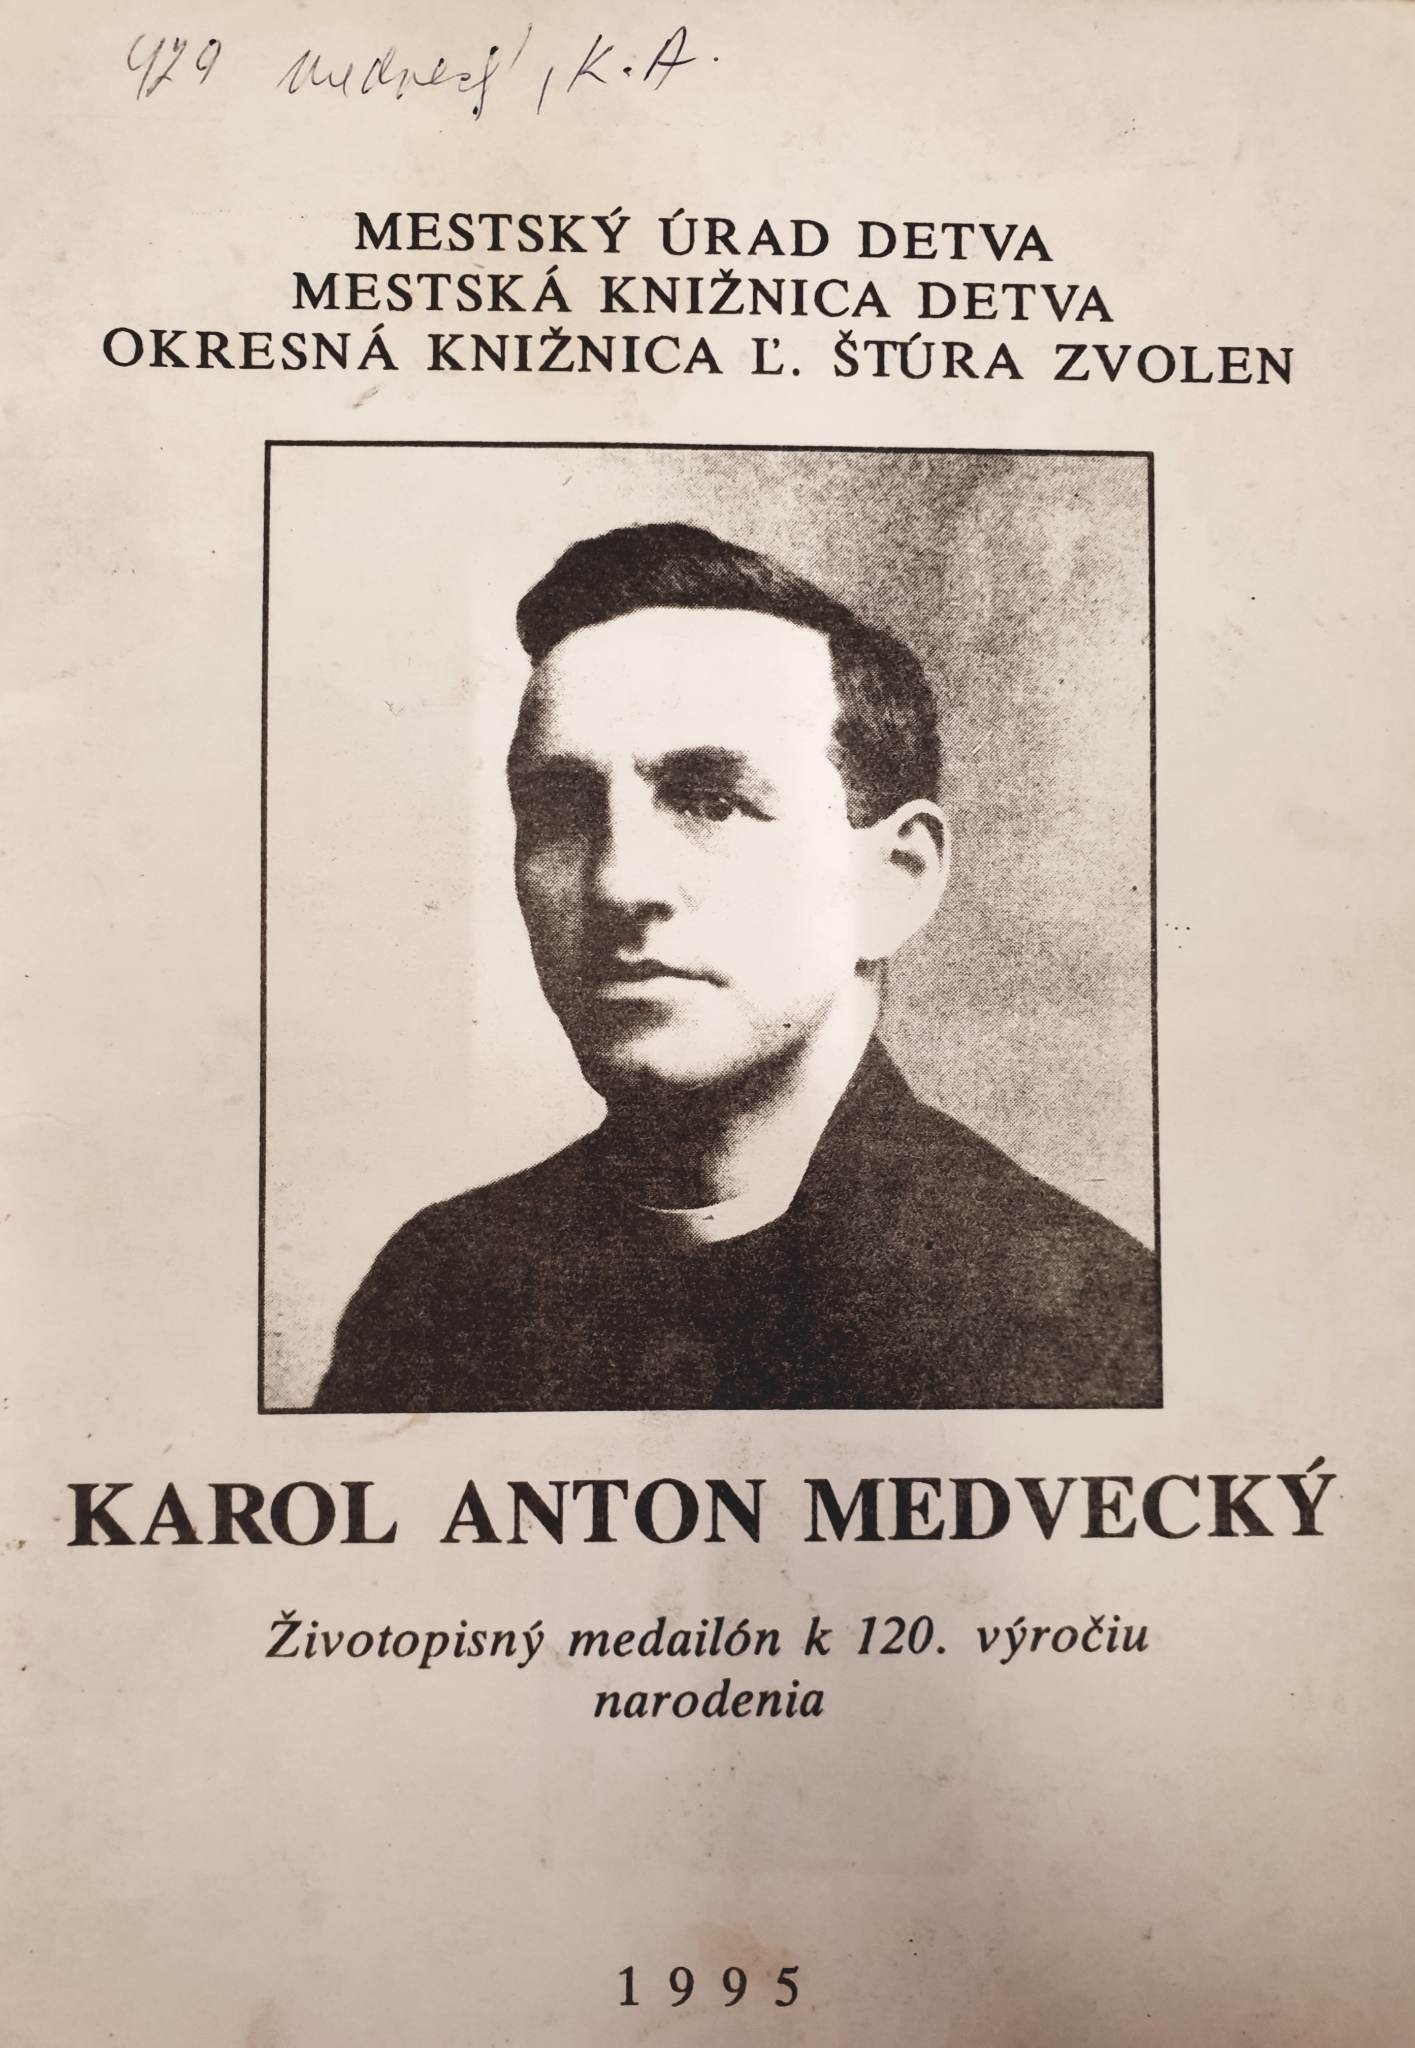 kniha "Karol Anton Medvecký - životopisný medailón k 120. výročiu narodenia